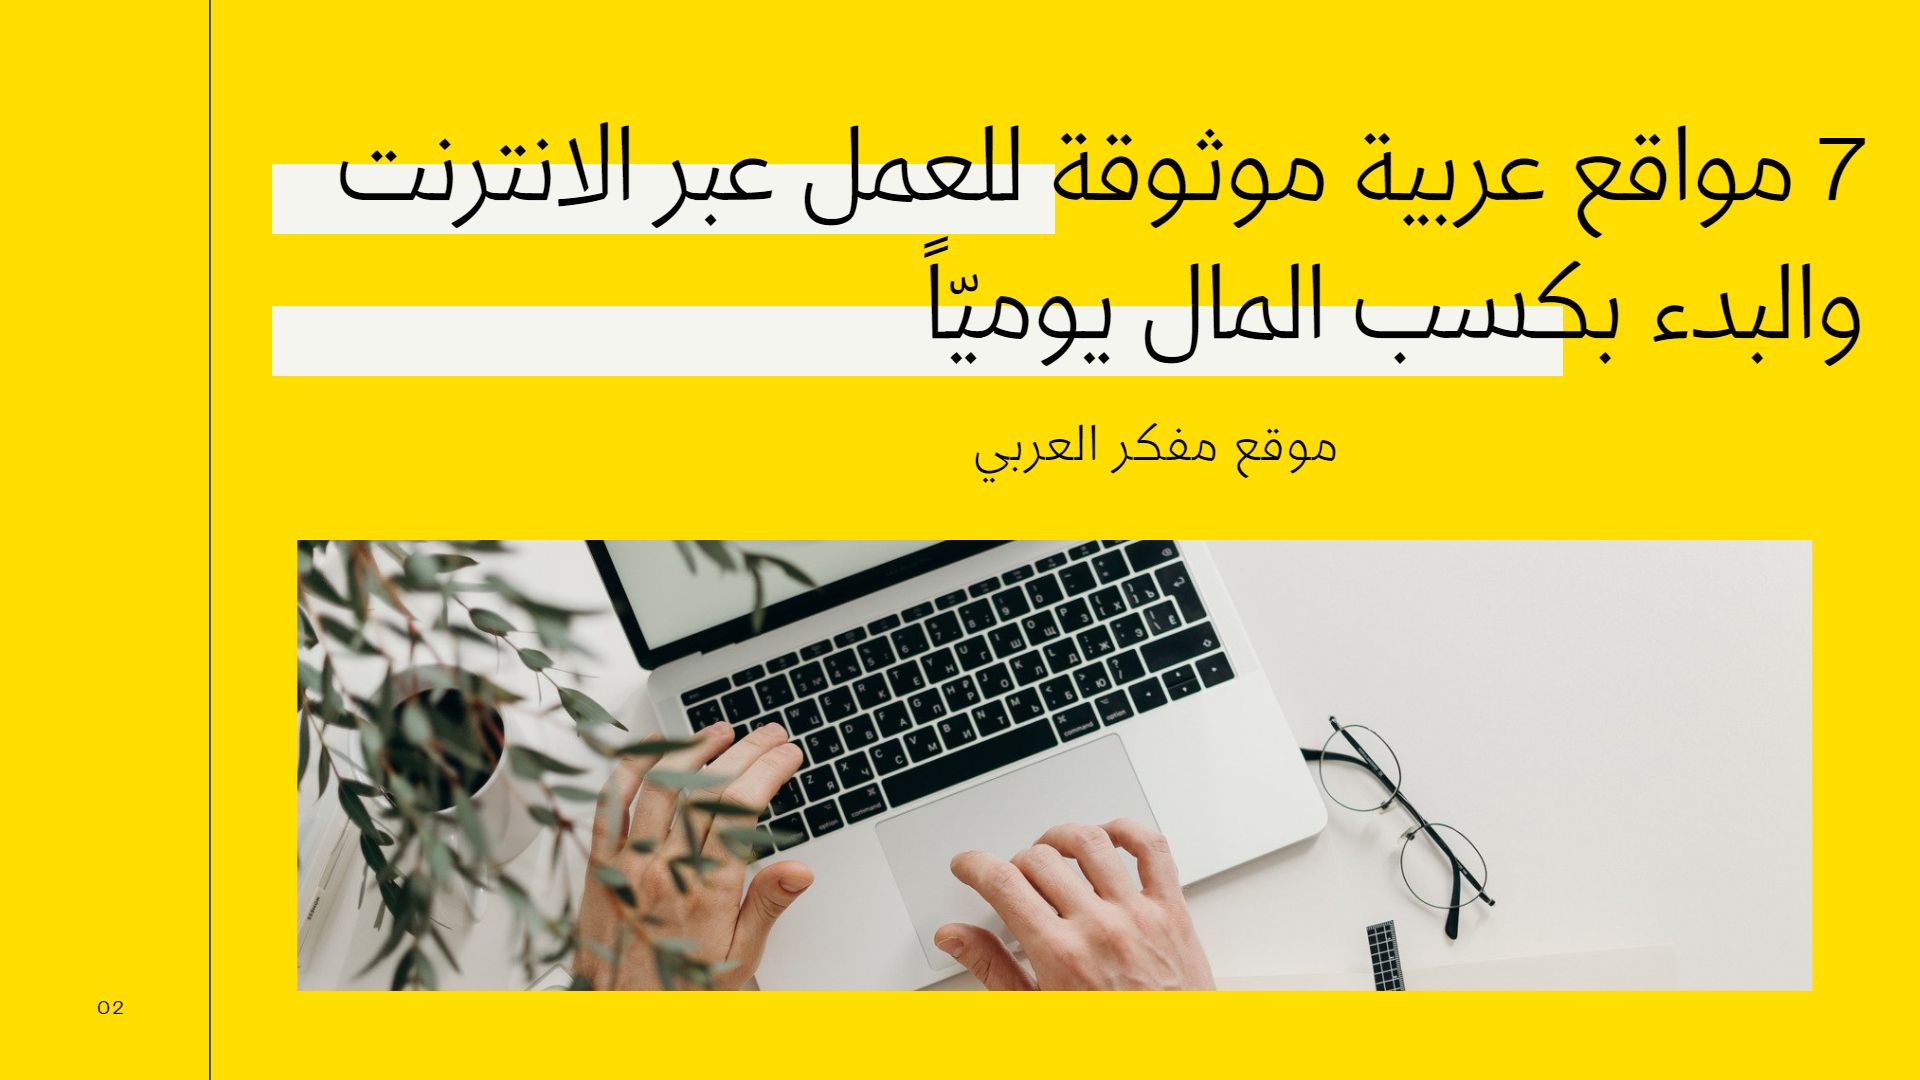 7 مواقع عربية موثوقة للعمل عبر الانترنت والبدء بكسب المال يوميّاً